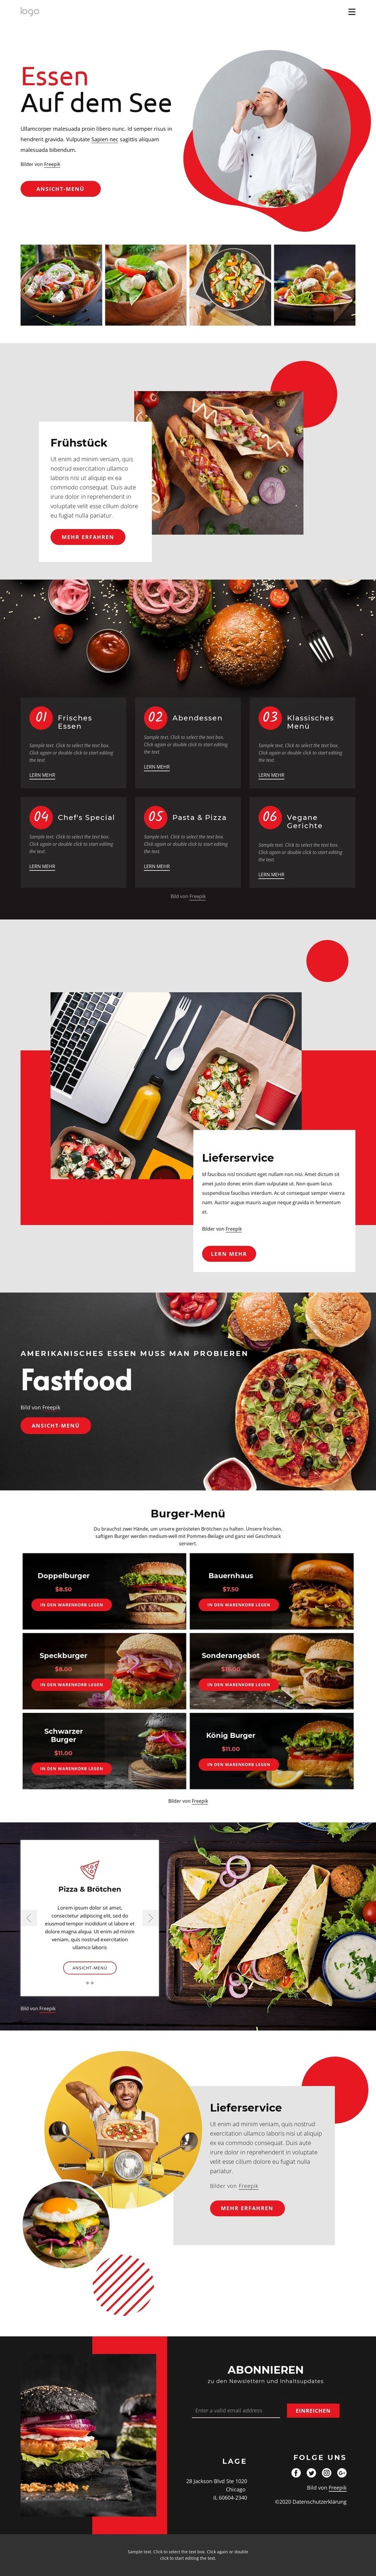 Essen am See Website design